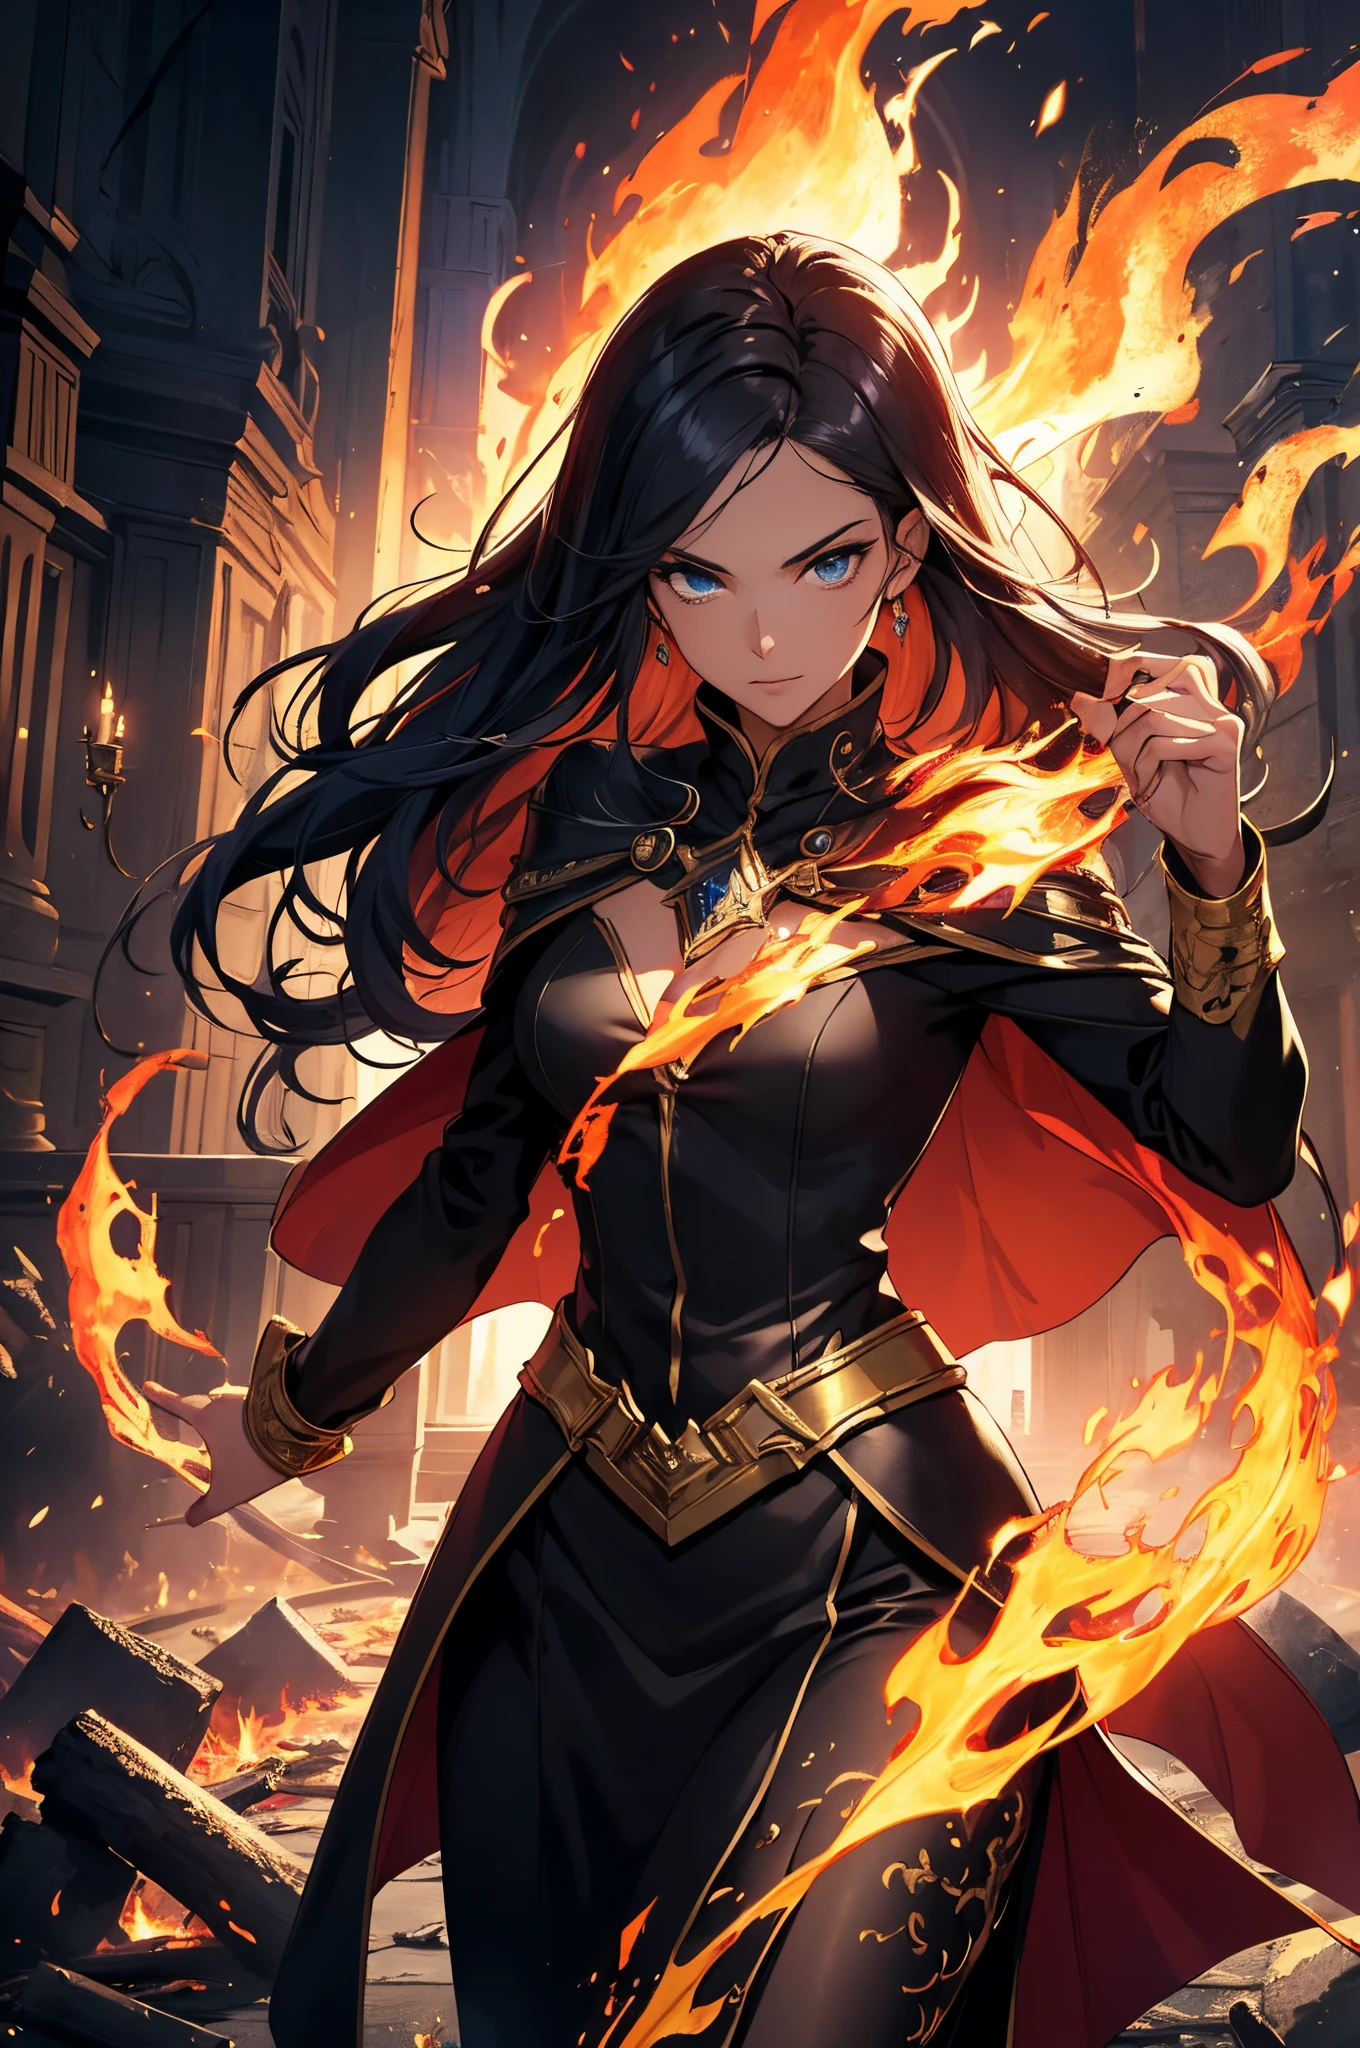 (卓越品质, 顶级图像质量, 杰作) 1 名黑长发、蓝眼睛的女子站在火中, 被火焰包围, 战斗姿势, 使用火魔法,, 金手镯, 黑暗巫师披风, 燃烧的火, 破碎的熔化建筑, 封面